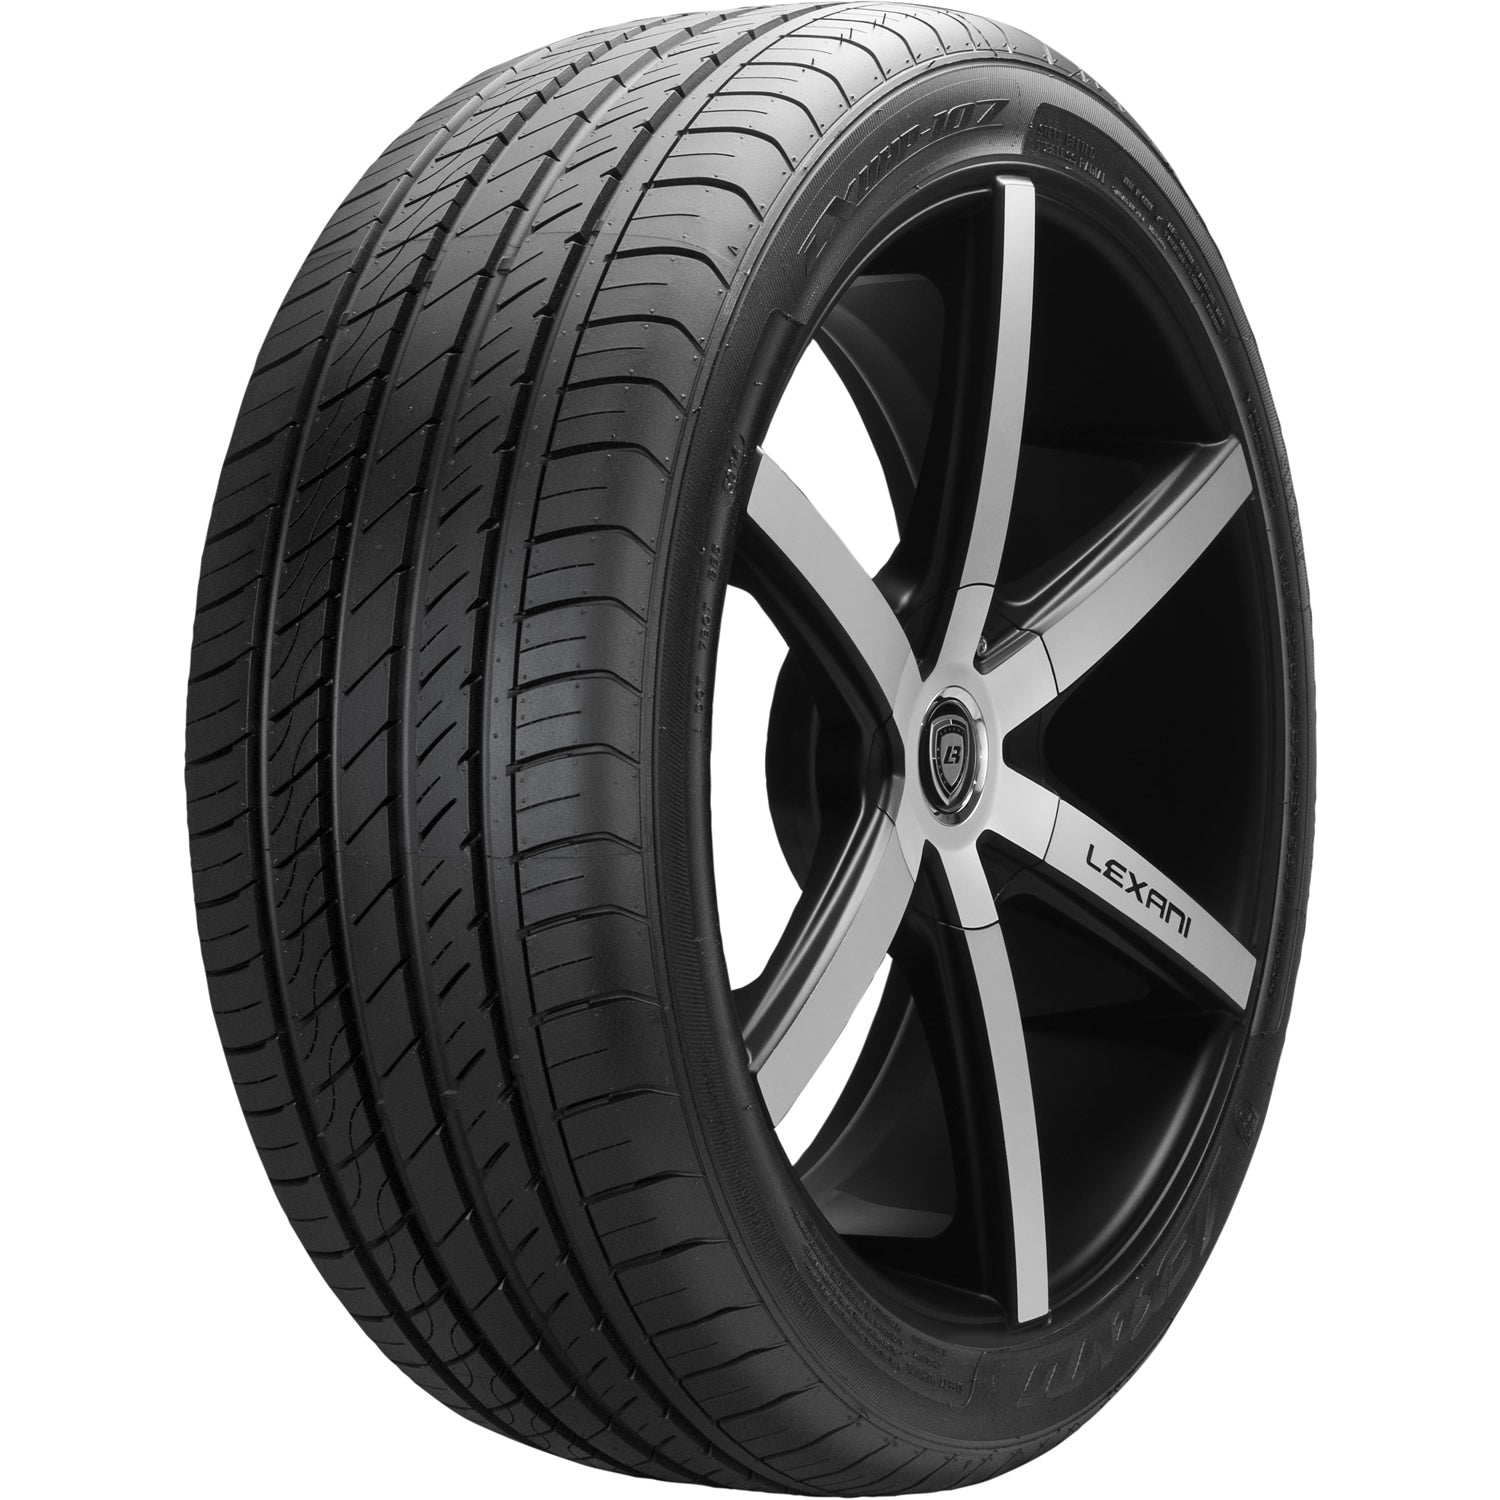 LEXANI LXUHP-107 205/40R17 (23.5X8.4R 17) Tires